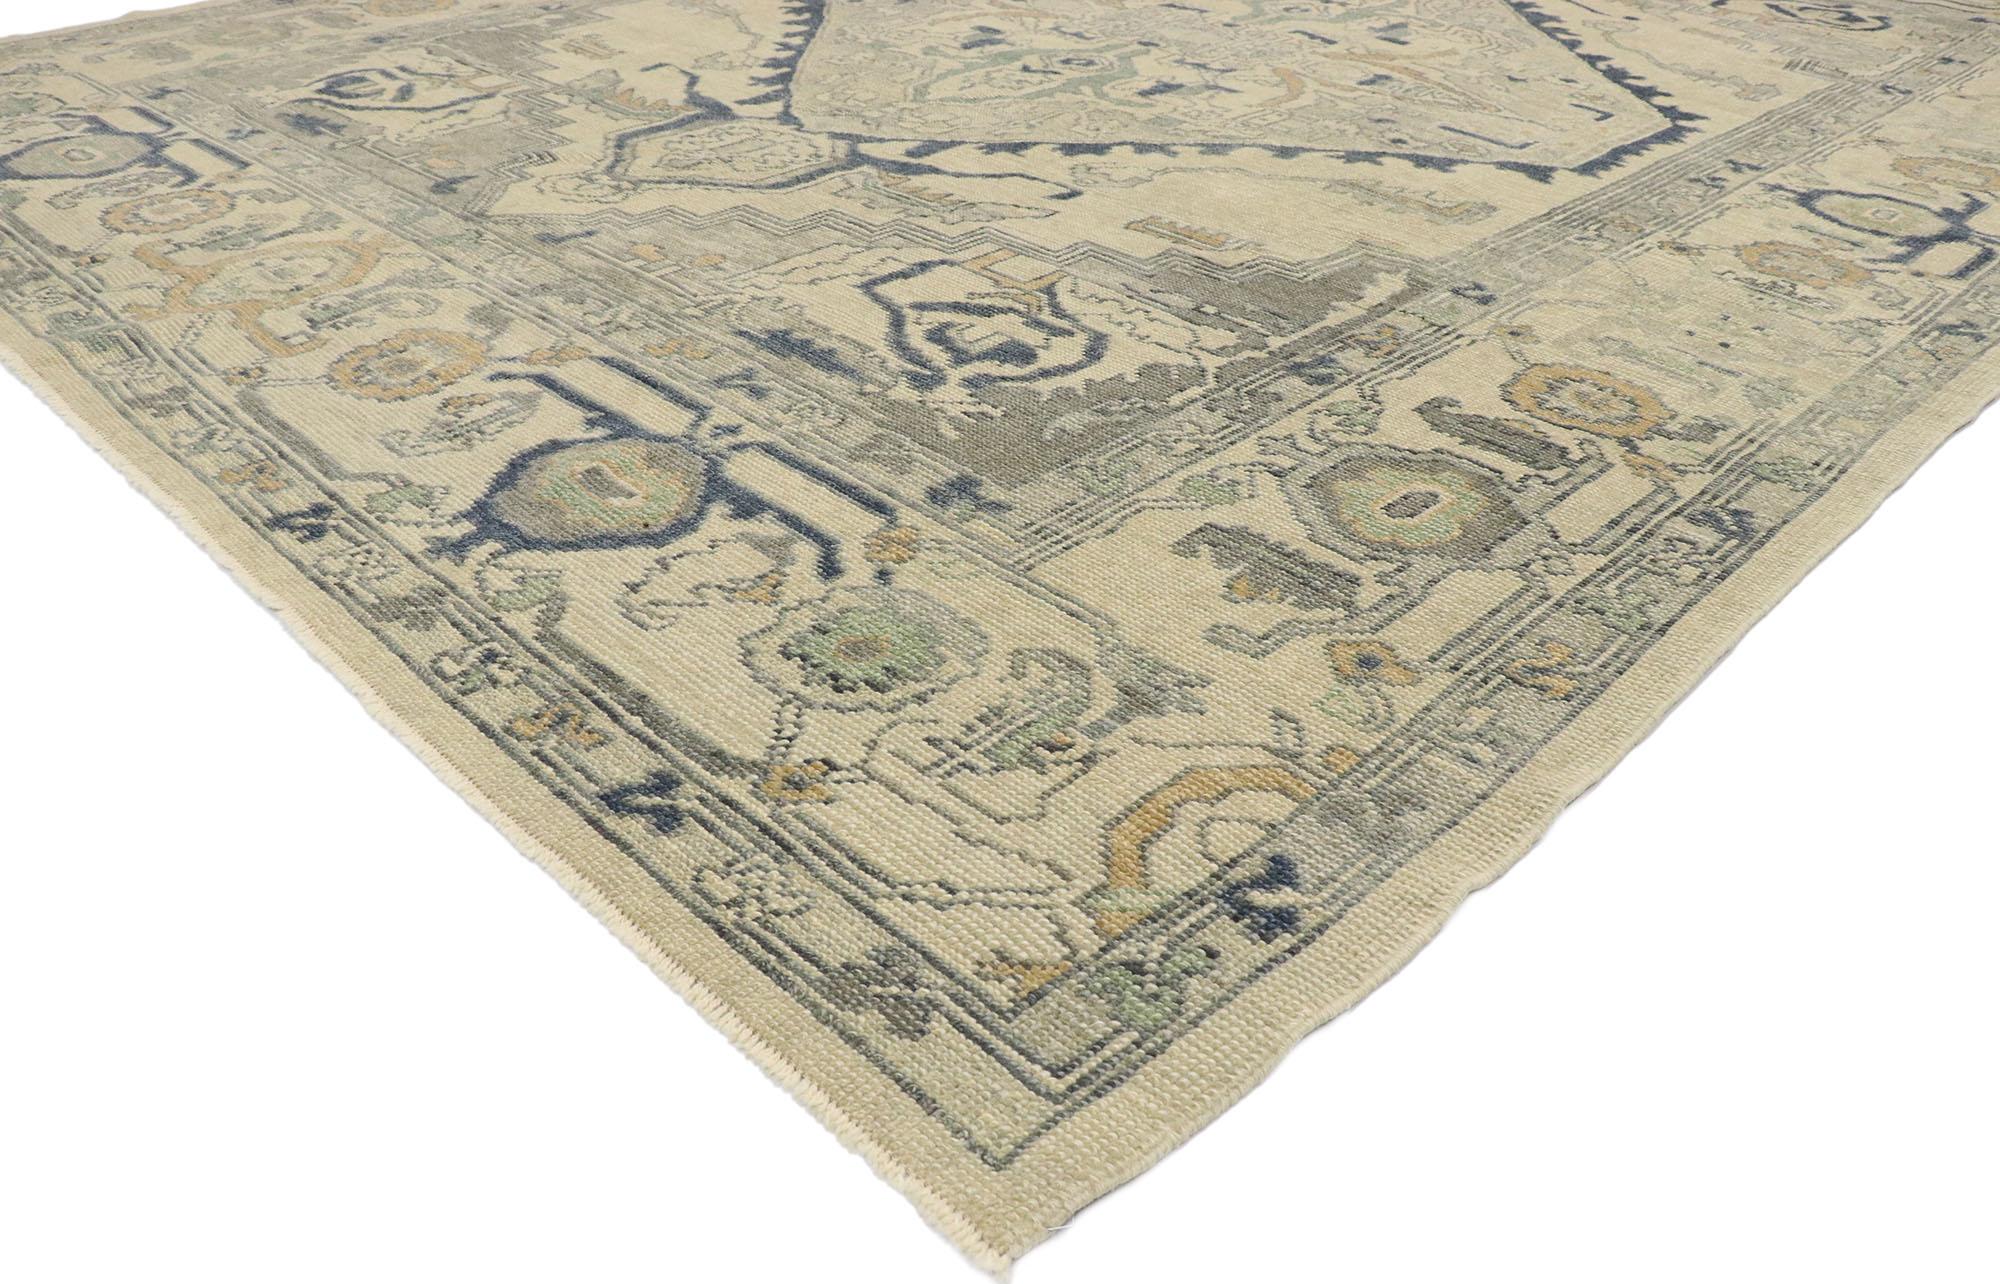 53404, Nouveau tapis turc Oushak de style moderne. Ce tapis turc Oushak en laine nouée à la main présente un grand médaillon botanique polygonal flottant au centre d'un champ sable-beige abrasé. Un feuillage anguleux avec une bordure en escalier et